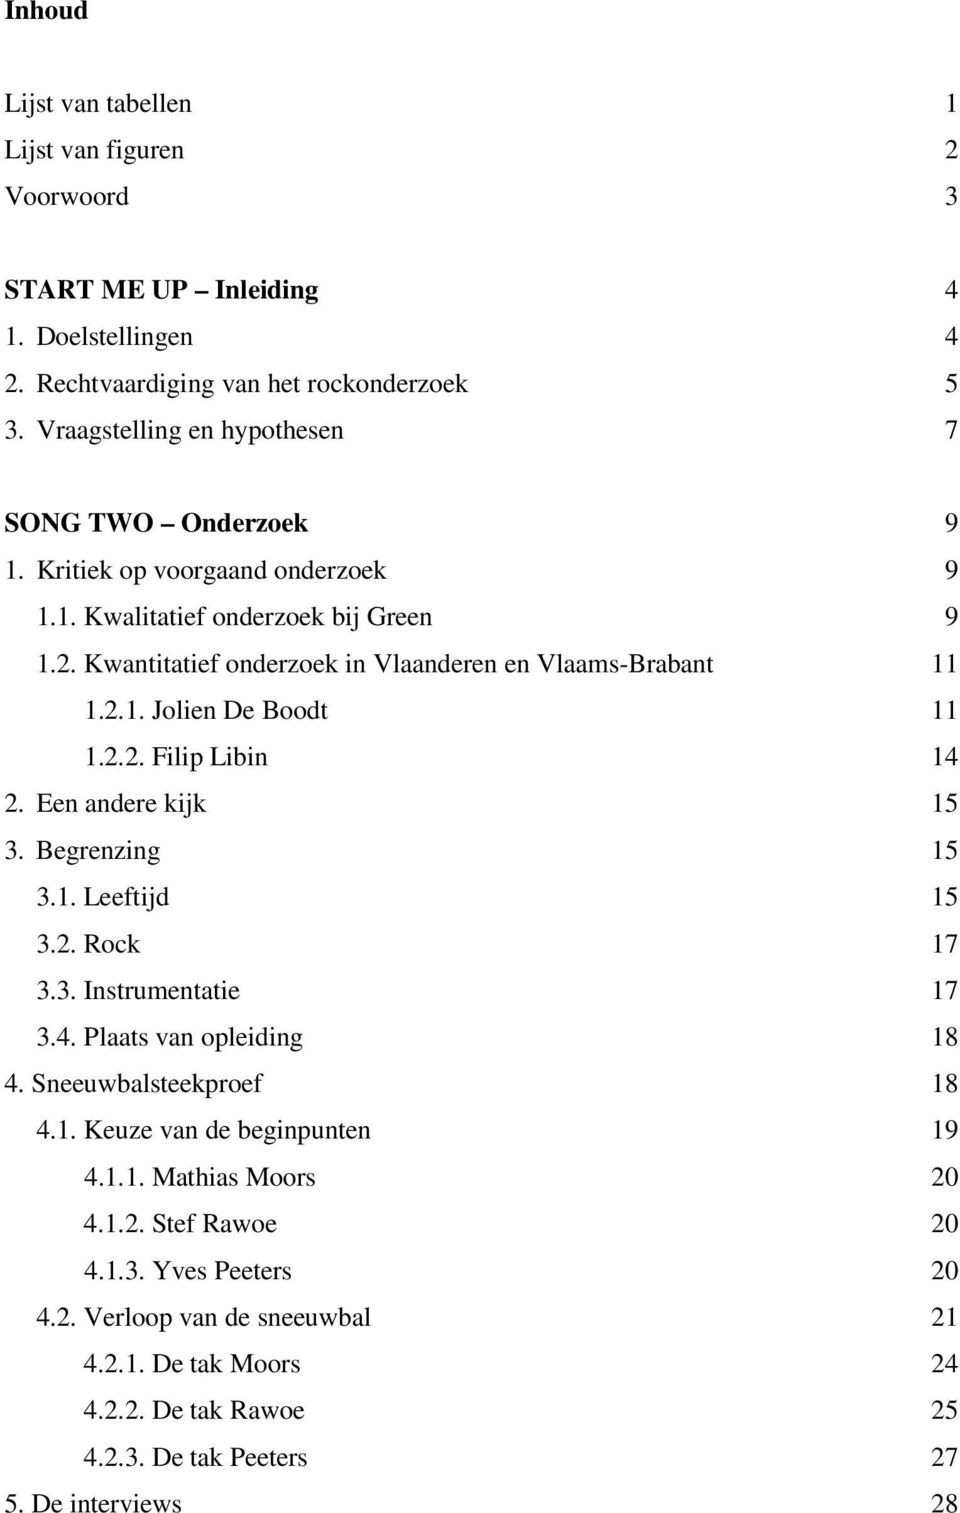 Kwantitatief onderzoek in Vlaanderen en Vlaams-Brabant 11 1.2.1. Jolien De Boodt 11 1.2.2. Filip Libin 14 2. Een andere kijk 15 3. Begrenzing 15 3.1. Leeftijd 15 3.2. Rock 17 3.3. Instrumentatie 17 3.